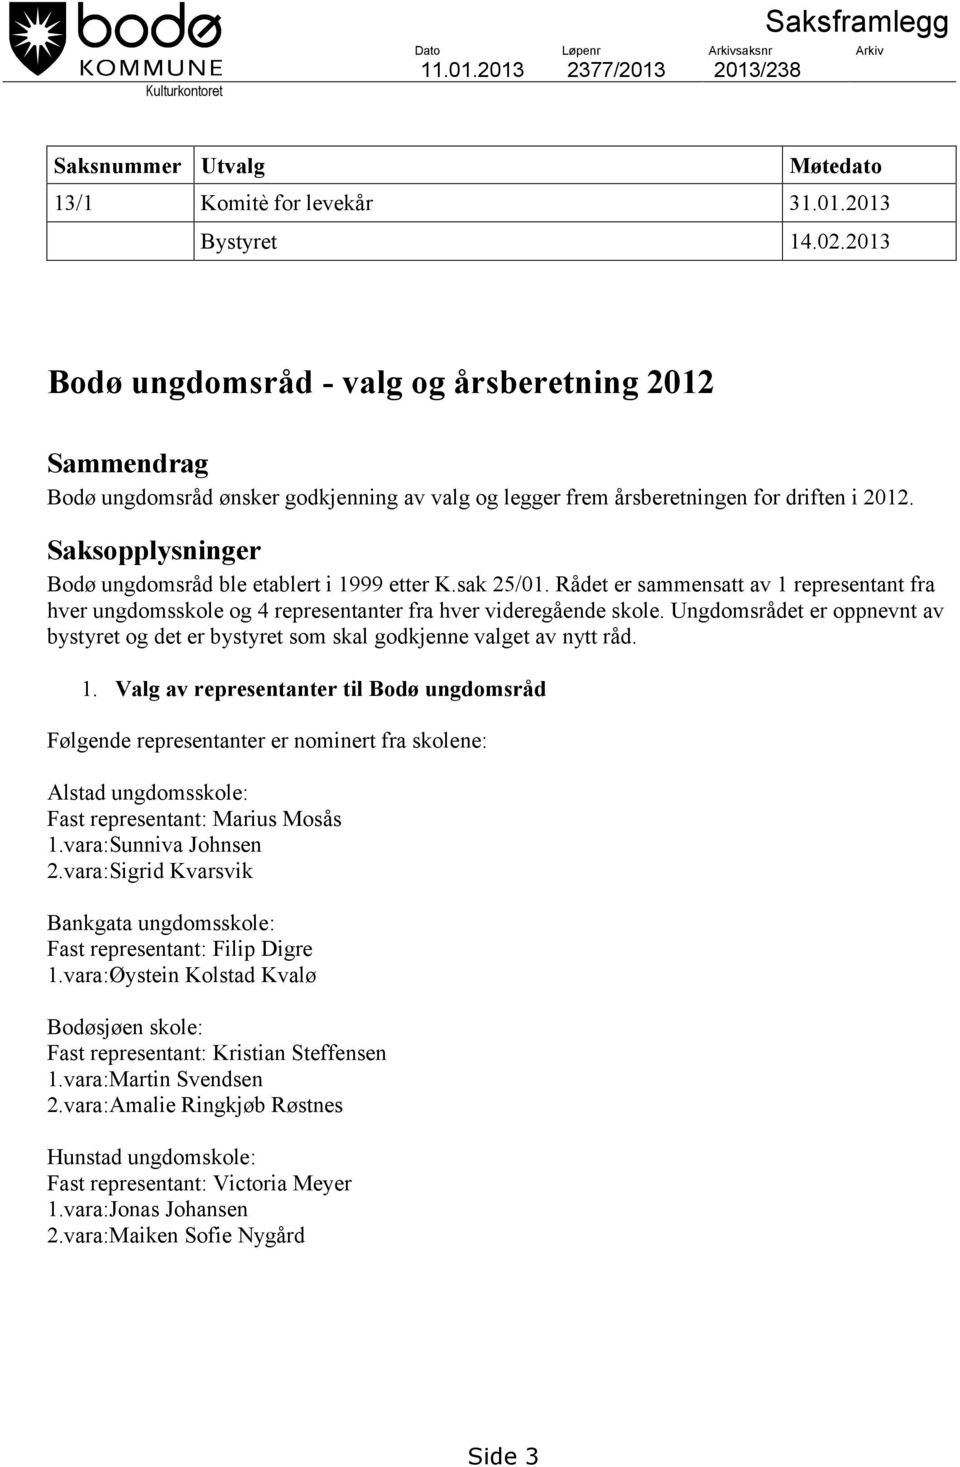 Saksopplysninger Bodø ungdomsråd ble etablert i 1999 etter K.sak 25/01. Rådet er sammensatt av 1 representant fra hver ungdomsskole og 4 representanter fra hver videregående skole.